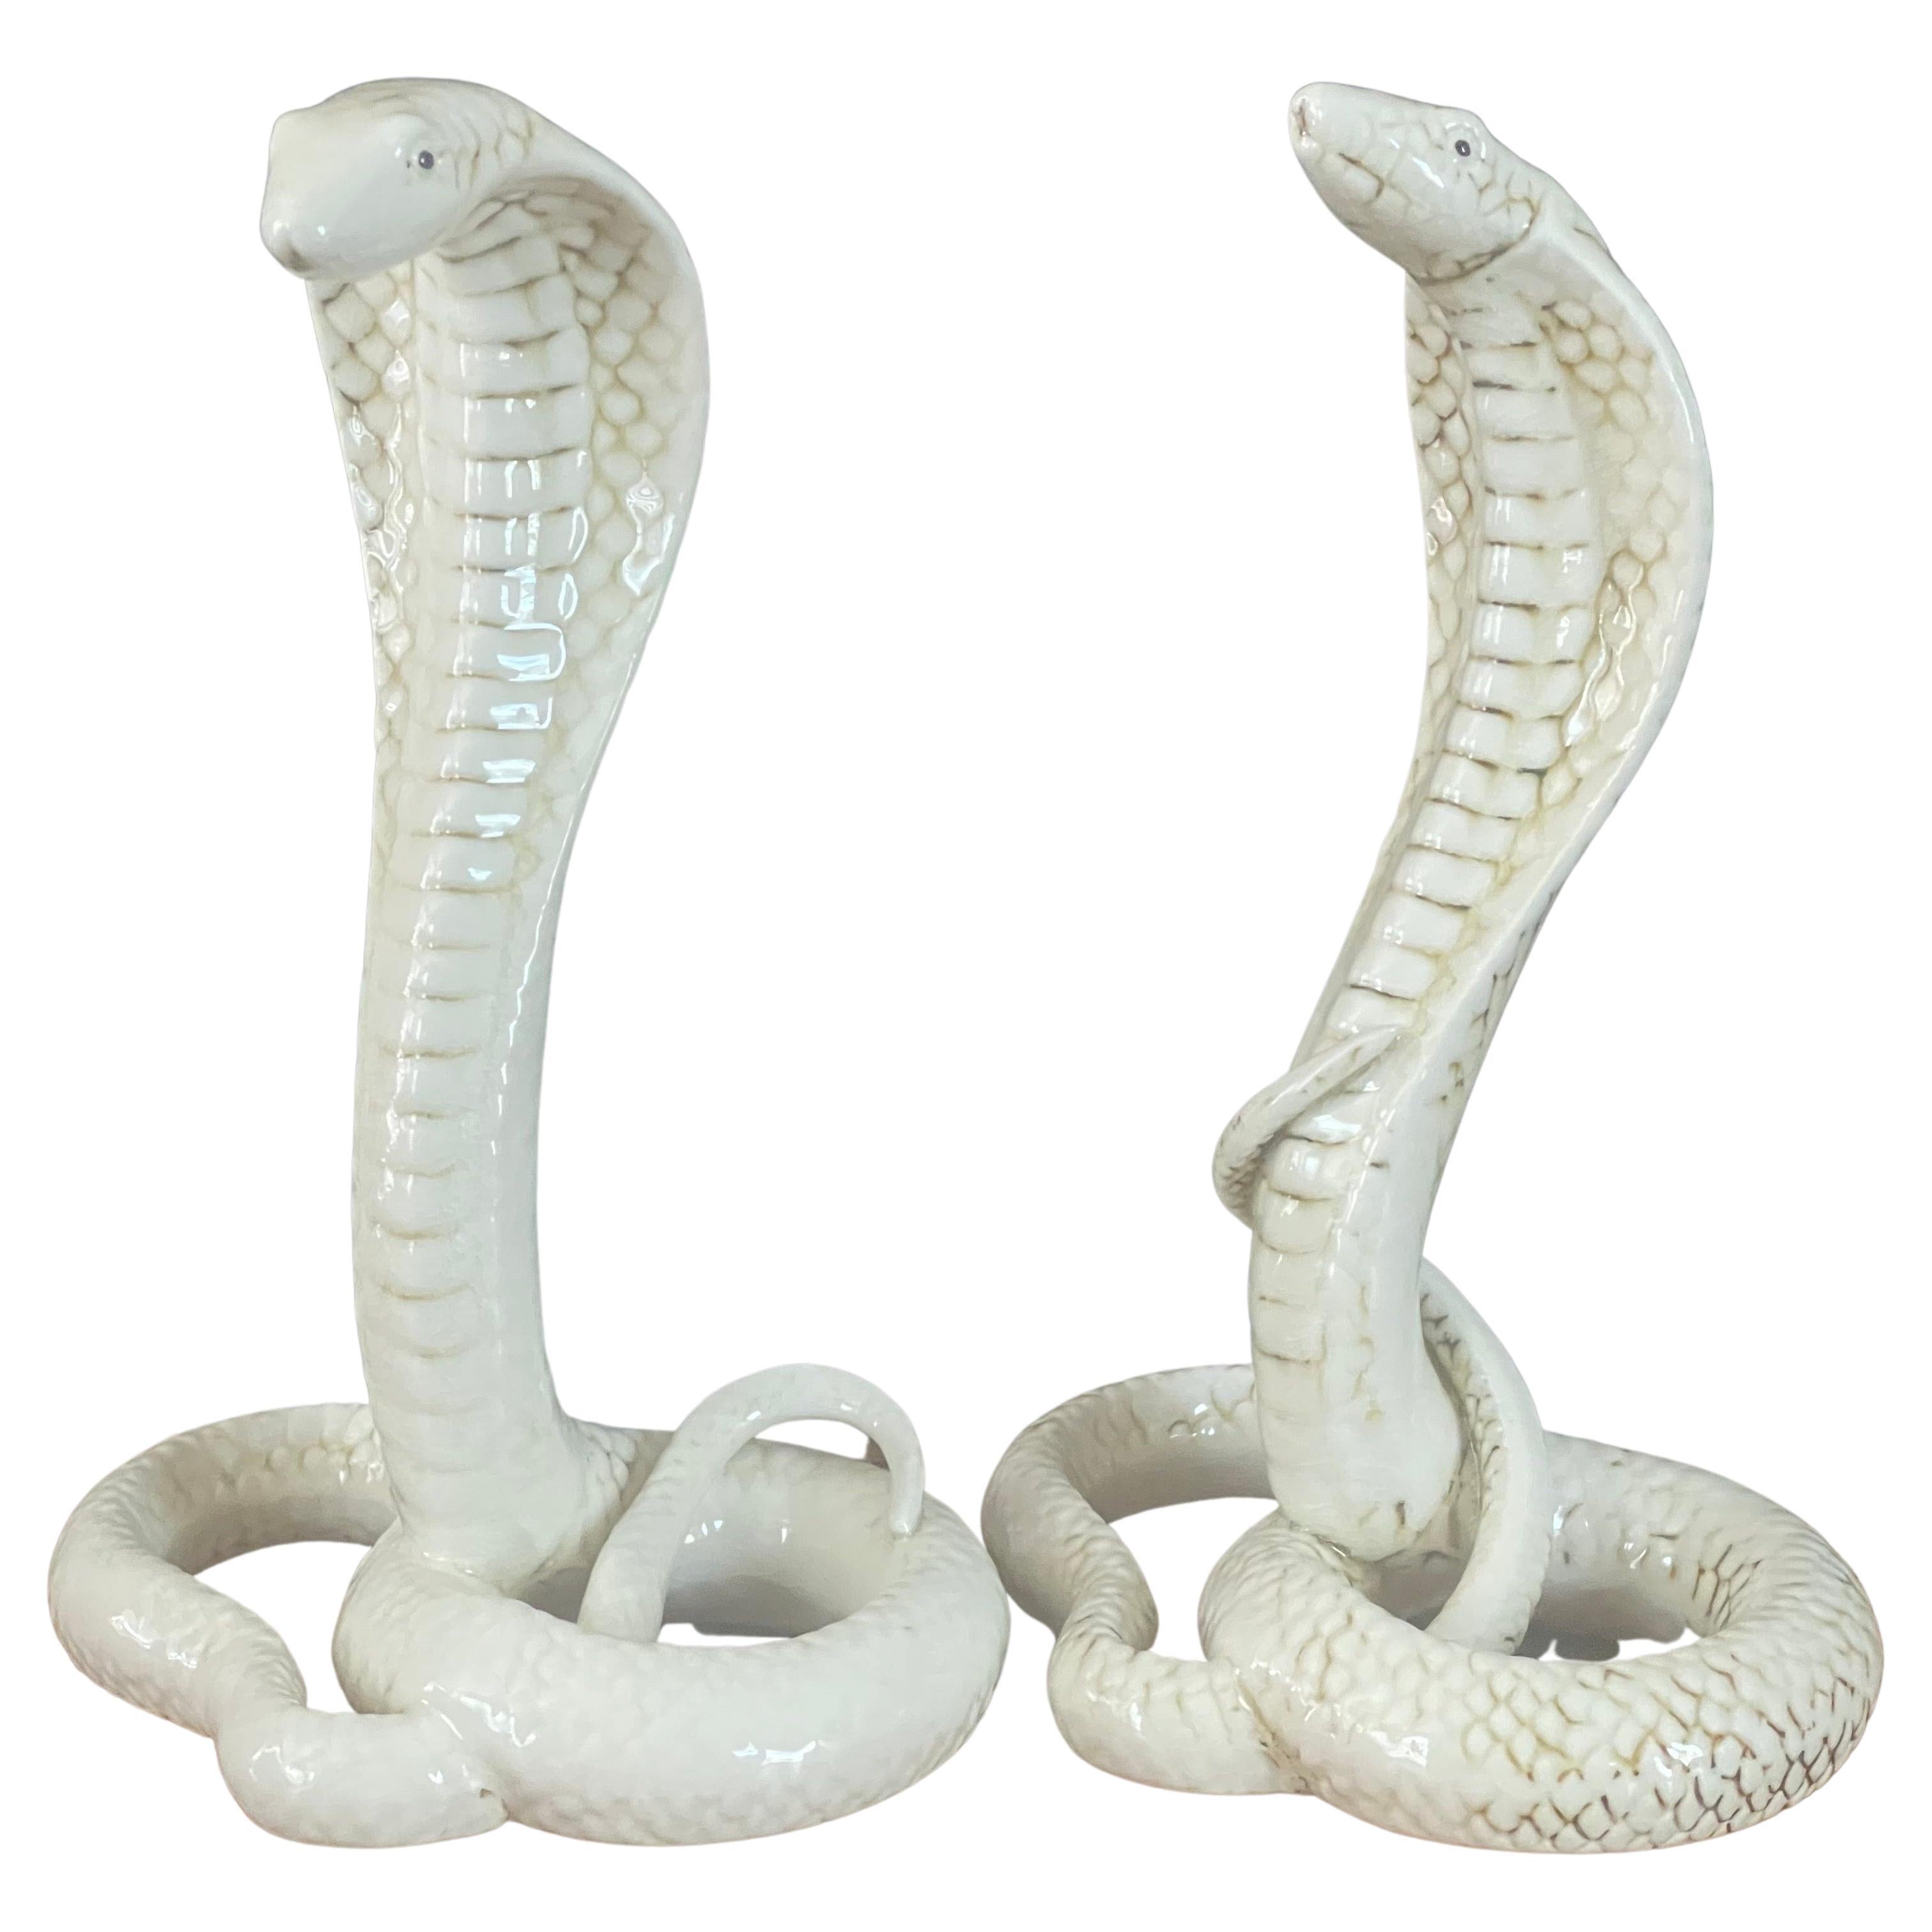 Ein fabelhaftes Paar keramischer Königskobra-Schlangenskulpturen, circa 1970er Jahre. Die Kobras sind in sehr gutem Vintage-Zustand ohne Chips oder Risse und messen 7,5 